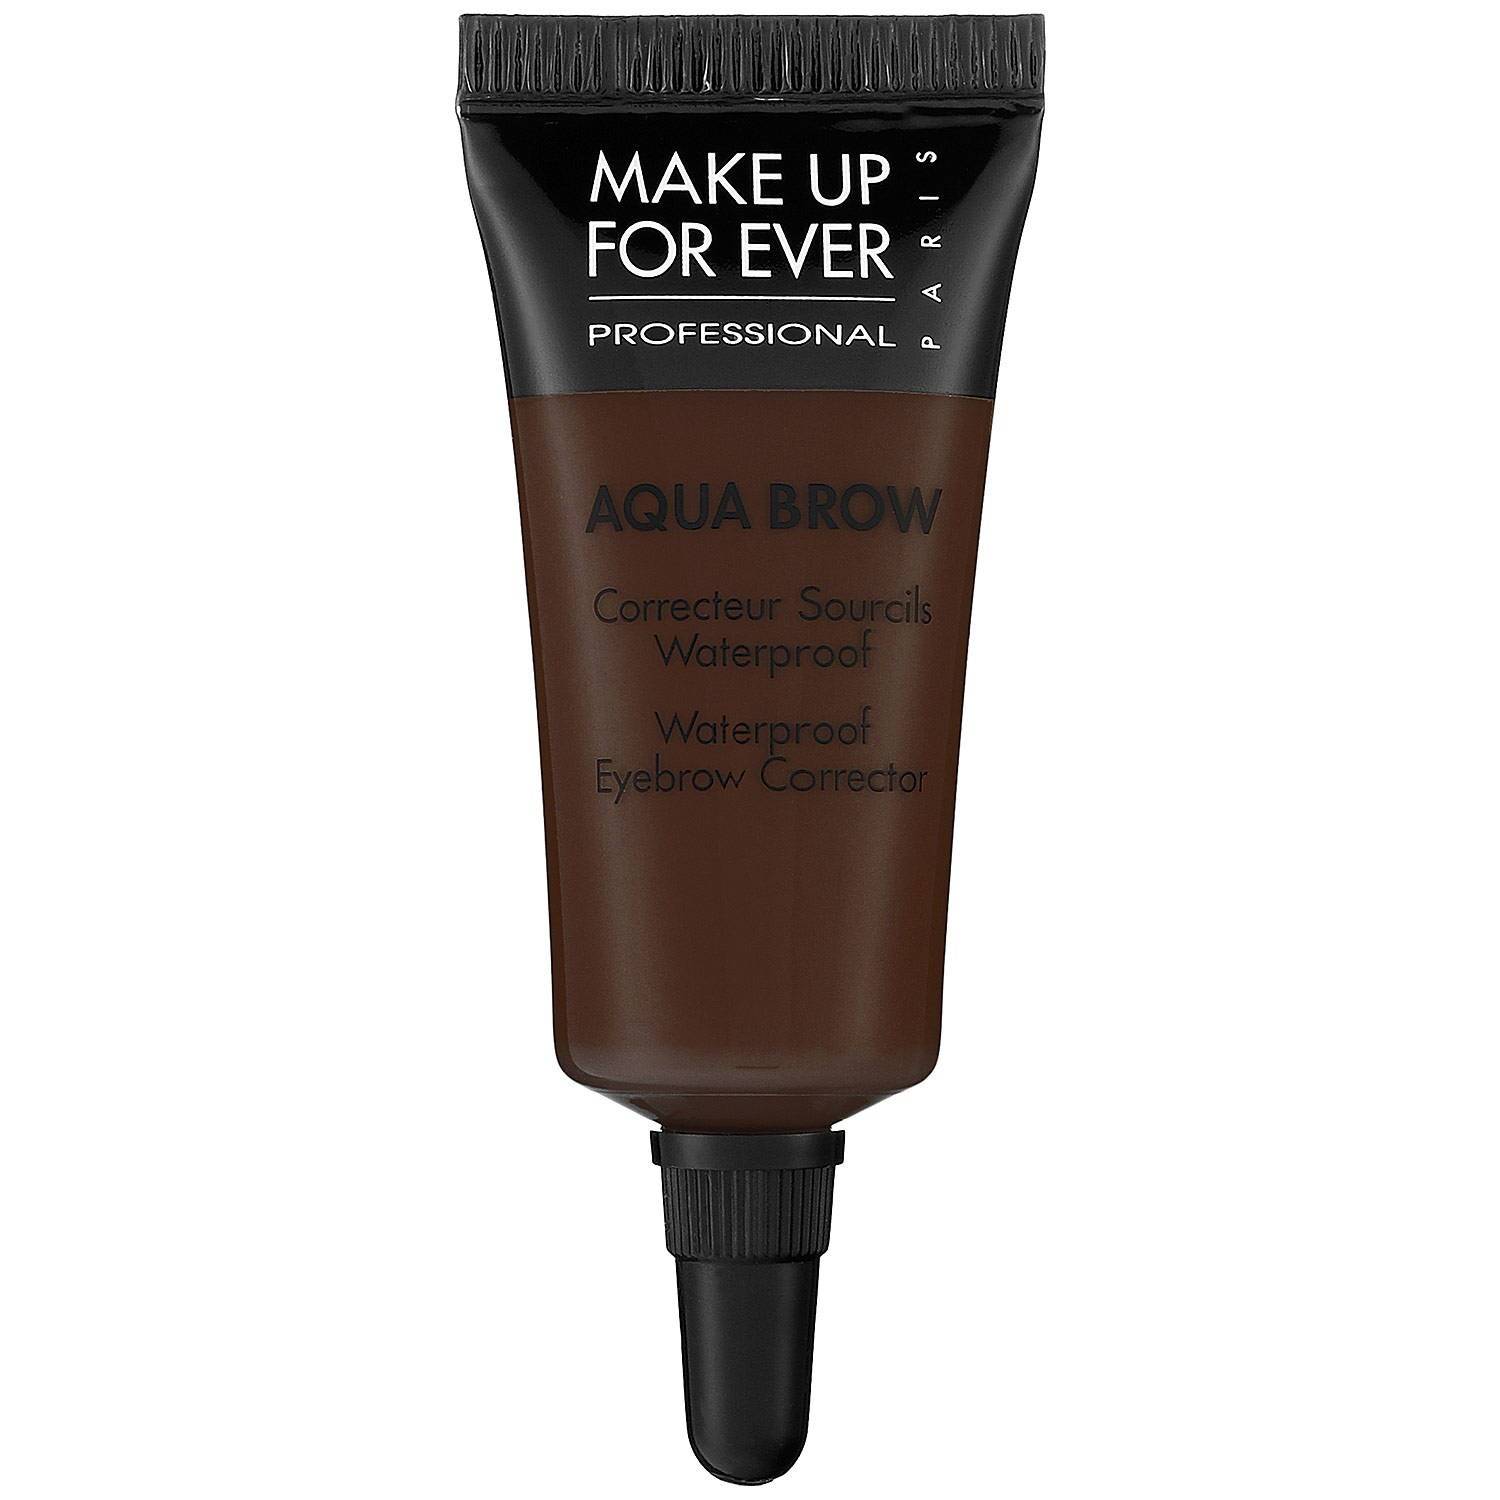 Make Up For Ever Aqua Brow Aqua Brow Dark Brow